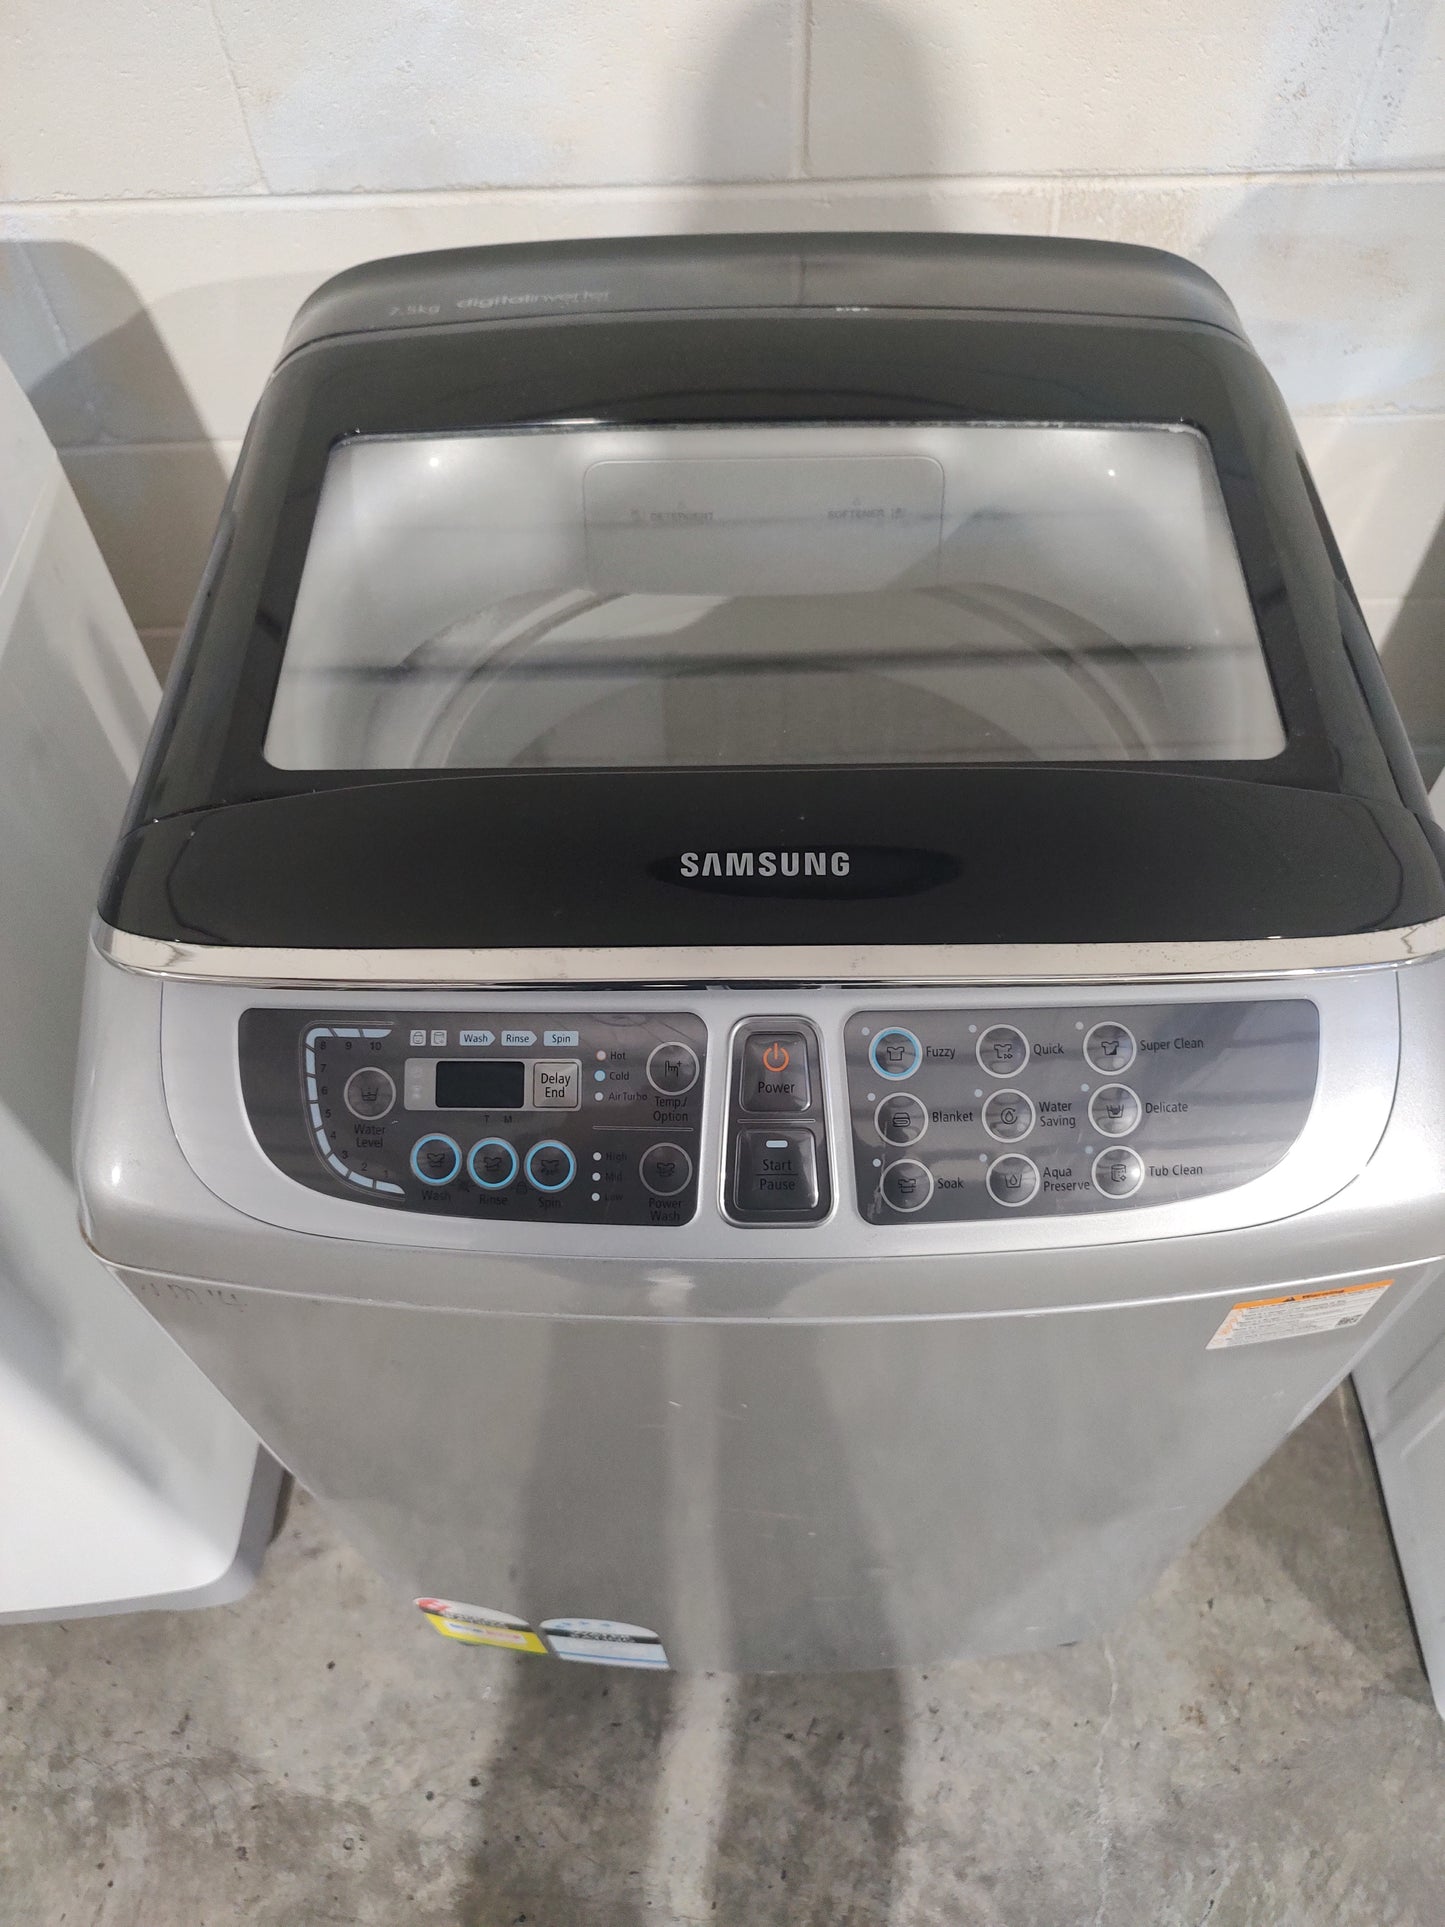 Samsung WA75F7S6 7.5kg Top Load Washing Machine